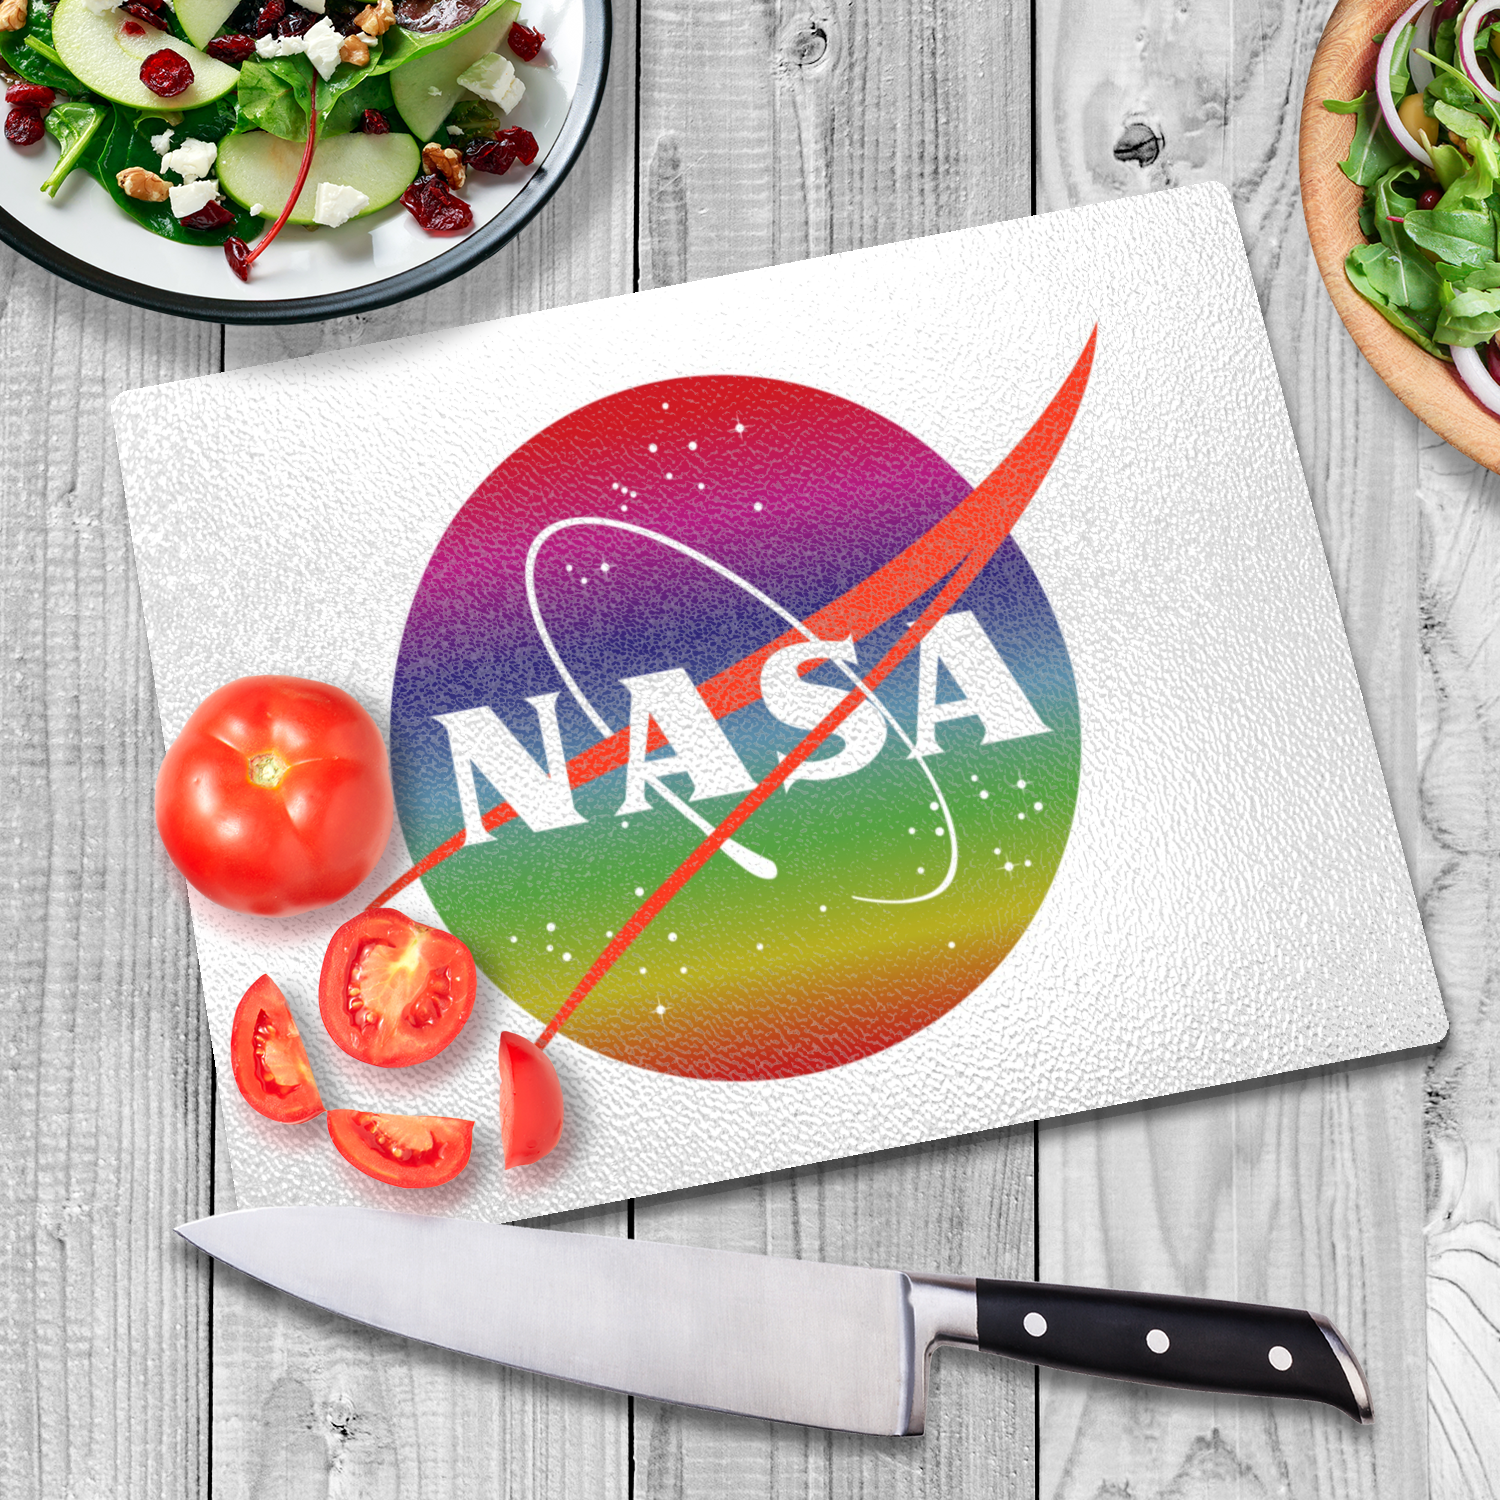 NASA Rainbow Logo Glass Cutting Board